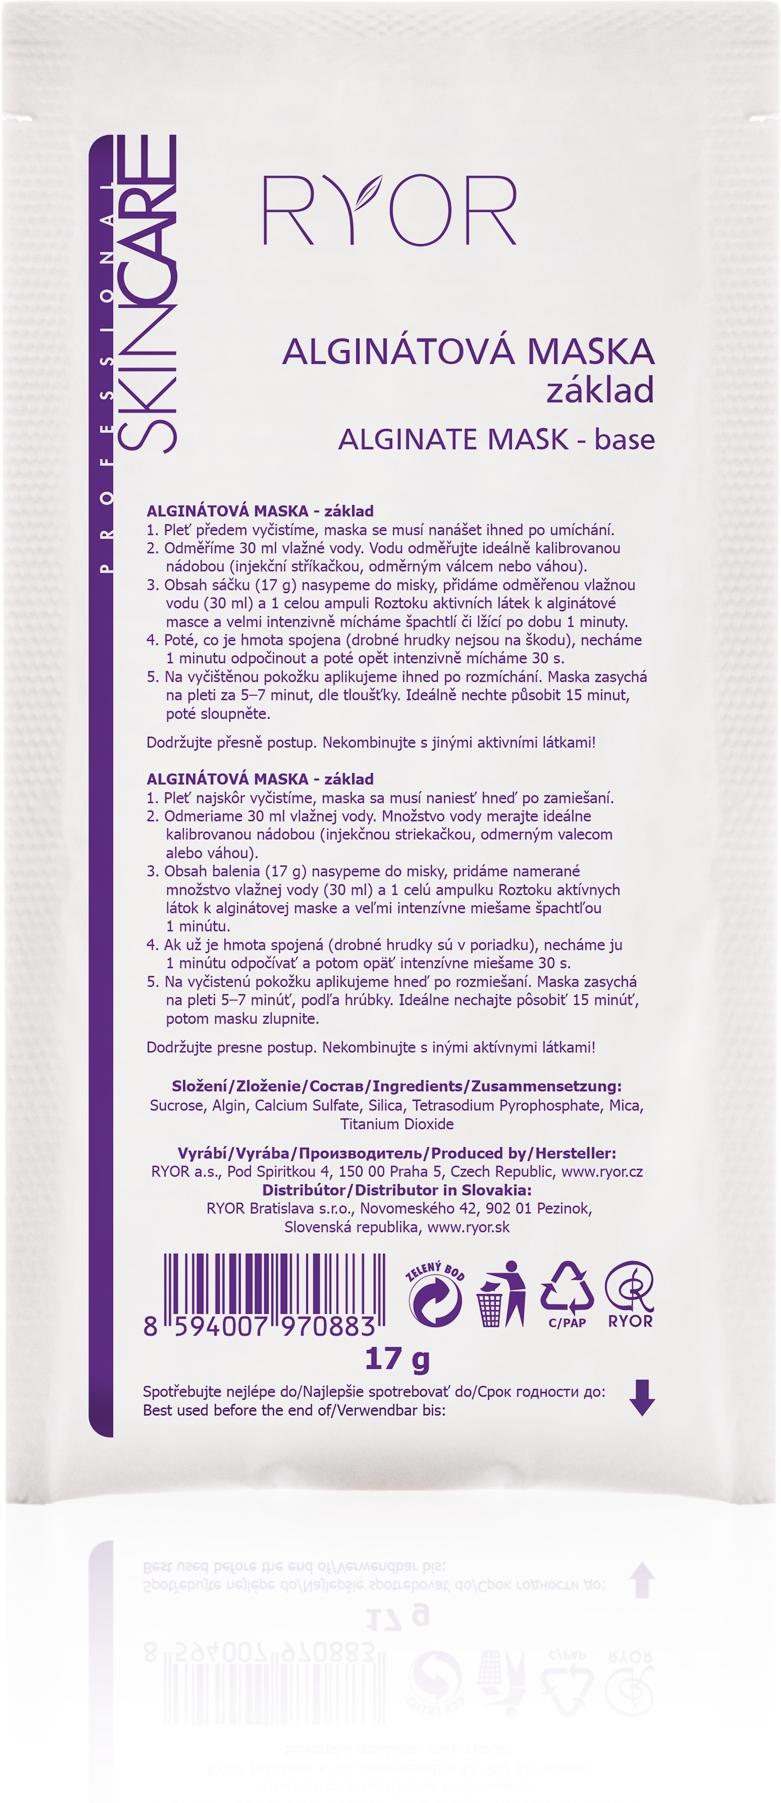 Ryor - Alginatmasken-Basis (Hautmasken für trockene und empfindliche Haut)